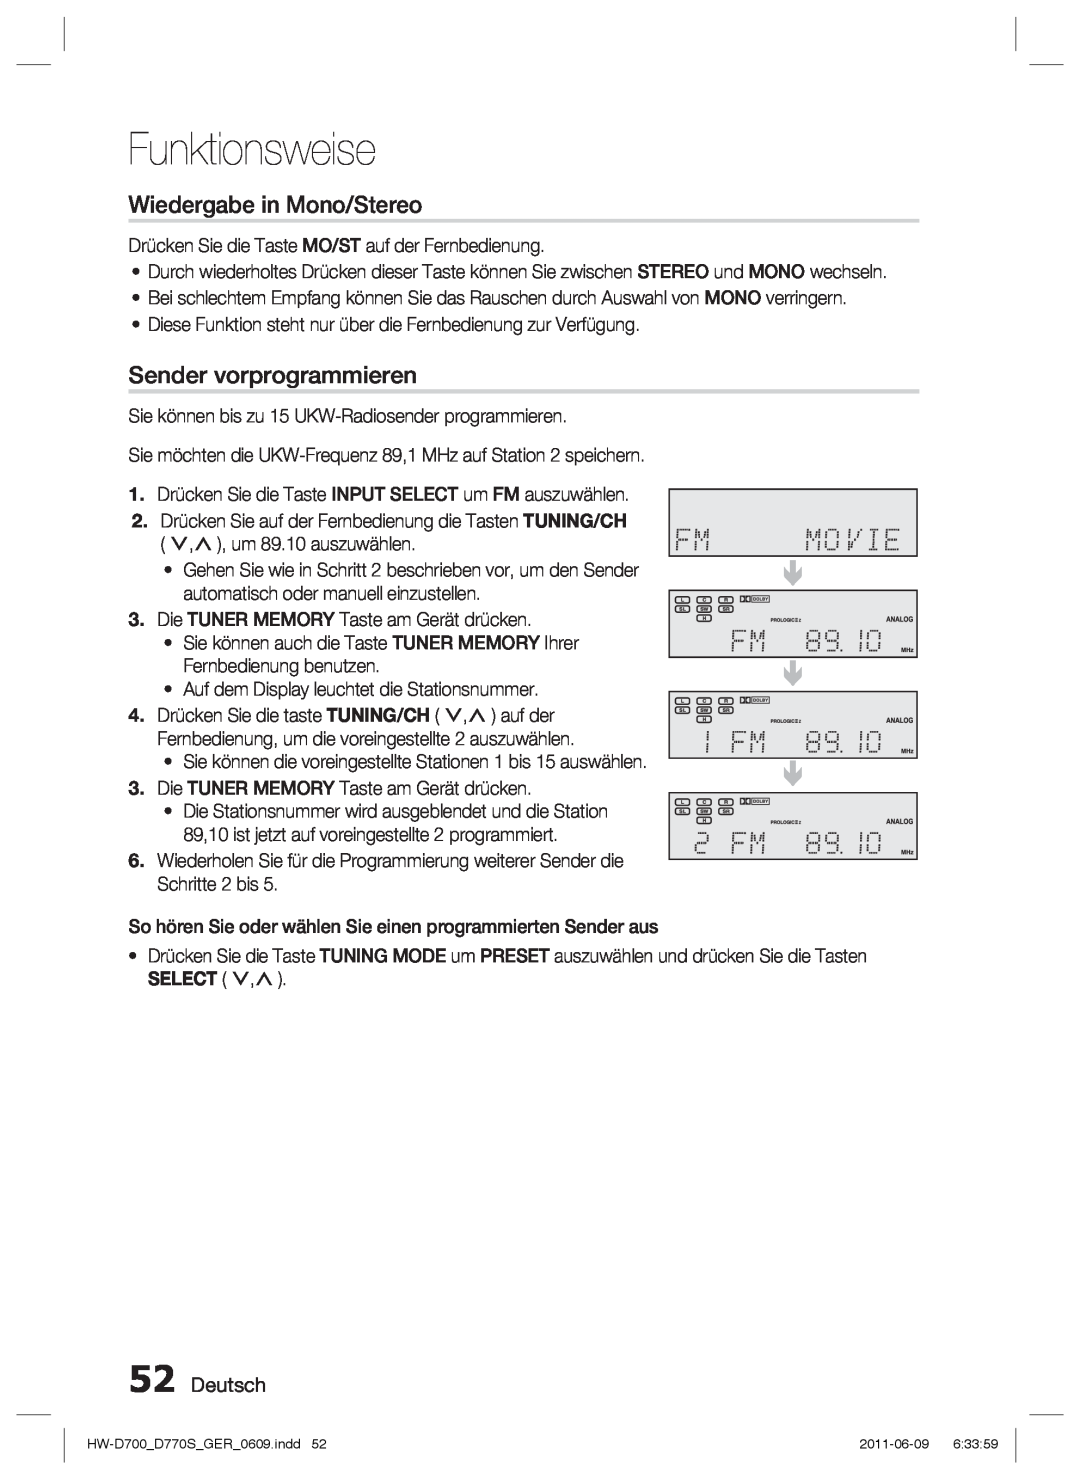 Samsung HW-D770S/EN, HW-D700/EN manual   , Wiedergabe in Mono/Stereo, Sender vorprogrammieren, Deutsch, Funktionsweise 